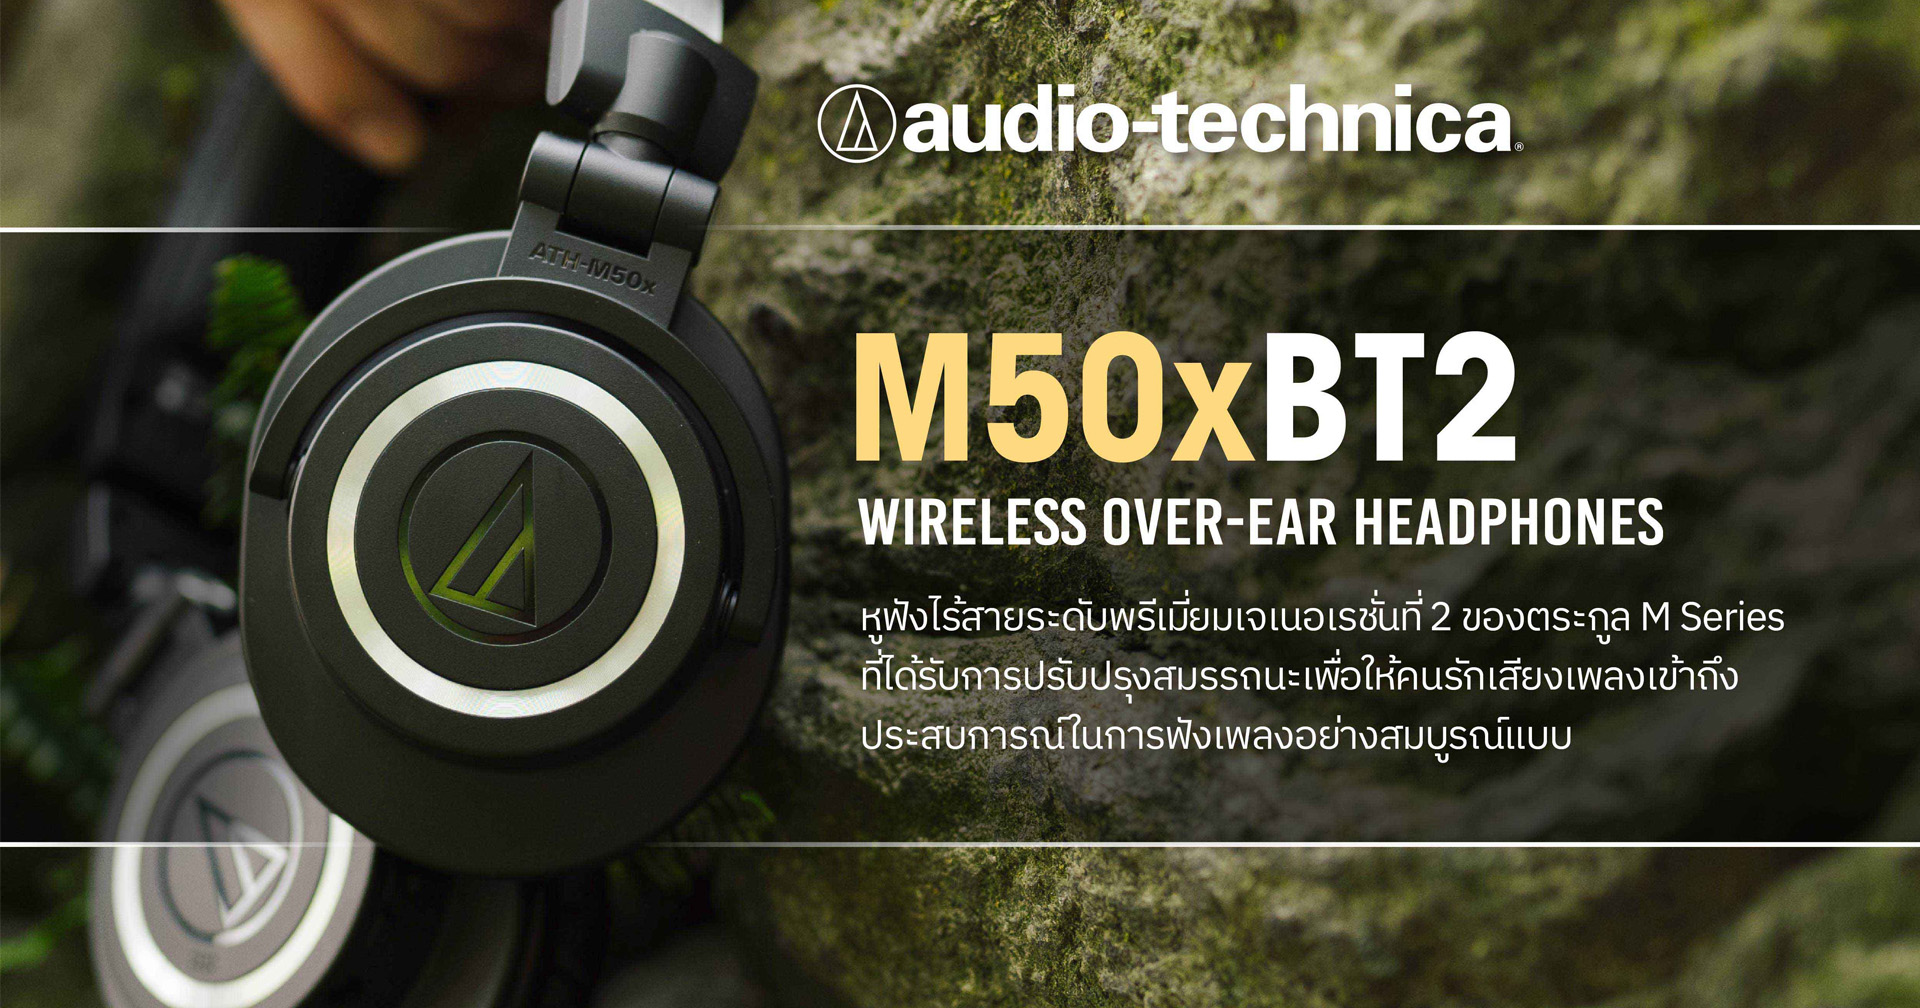 เปิดตัว Audio-Technica ATH-M50xBT2 หูฟังครอบหูไร้สาย ปรับปรุงใหม่เชื่อมต่อดีขึ้น